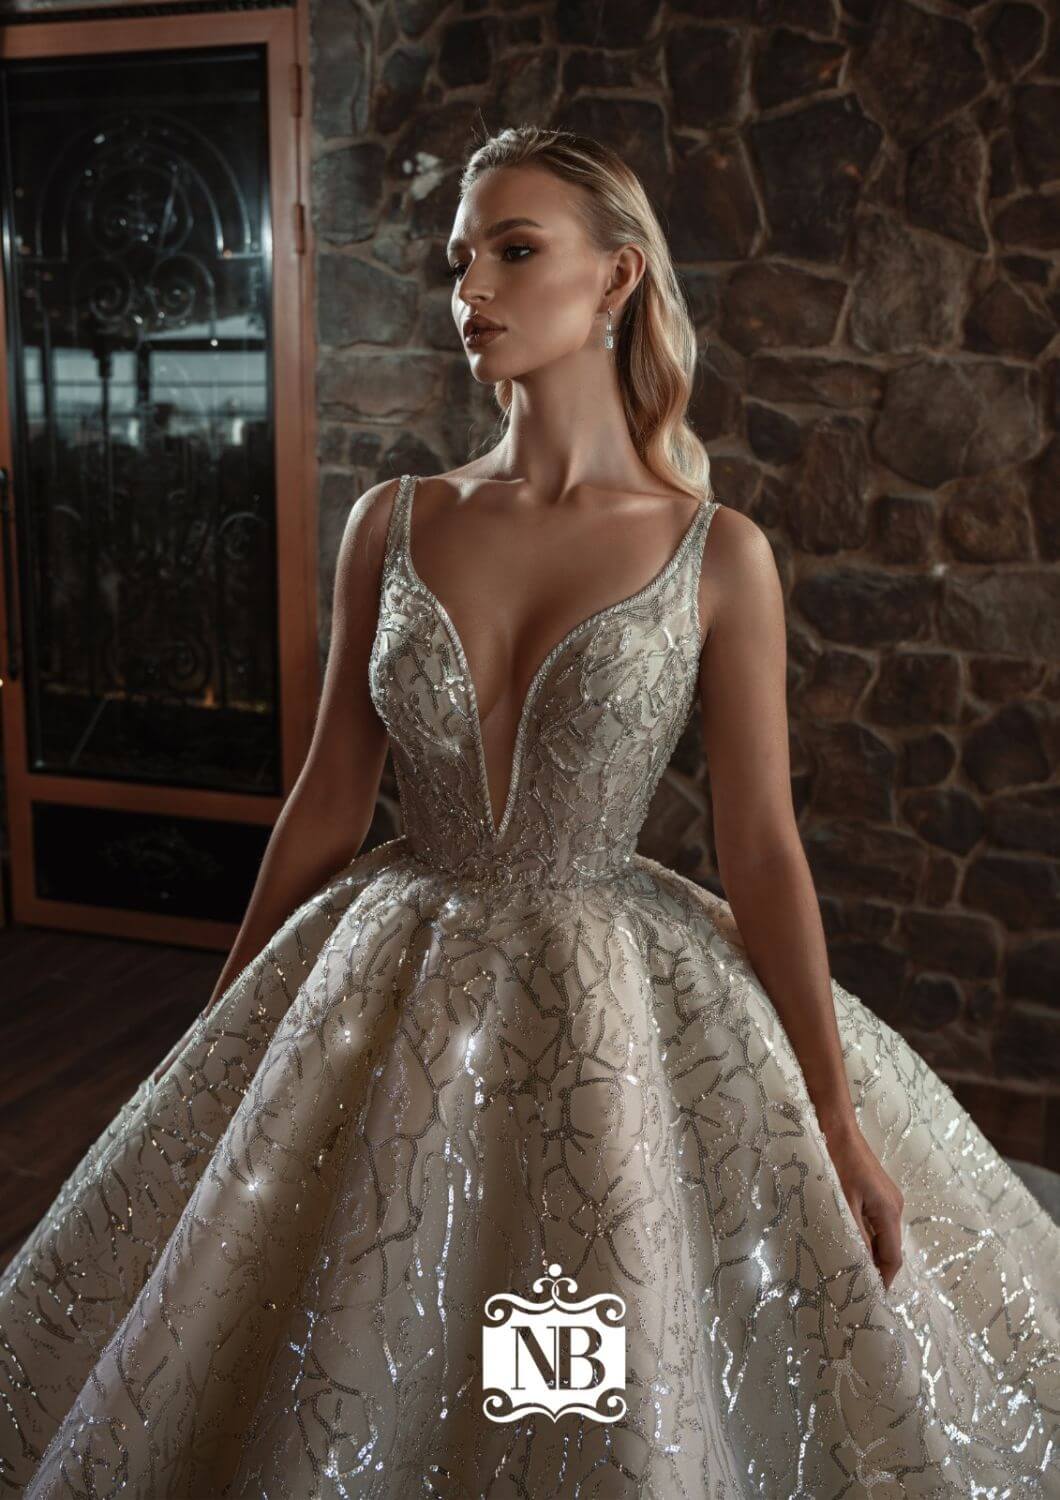 Consigue los más lujosos y deslumbrantes diseños de vestidos de novia en Venezuela con Bridal Room Boutique - Tenemos la exclusividad de los diseñadores europeos Nova Bella